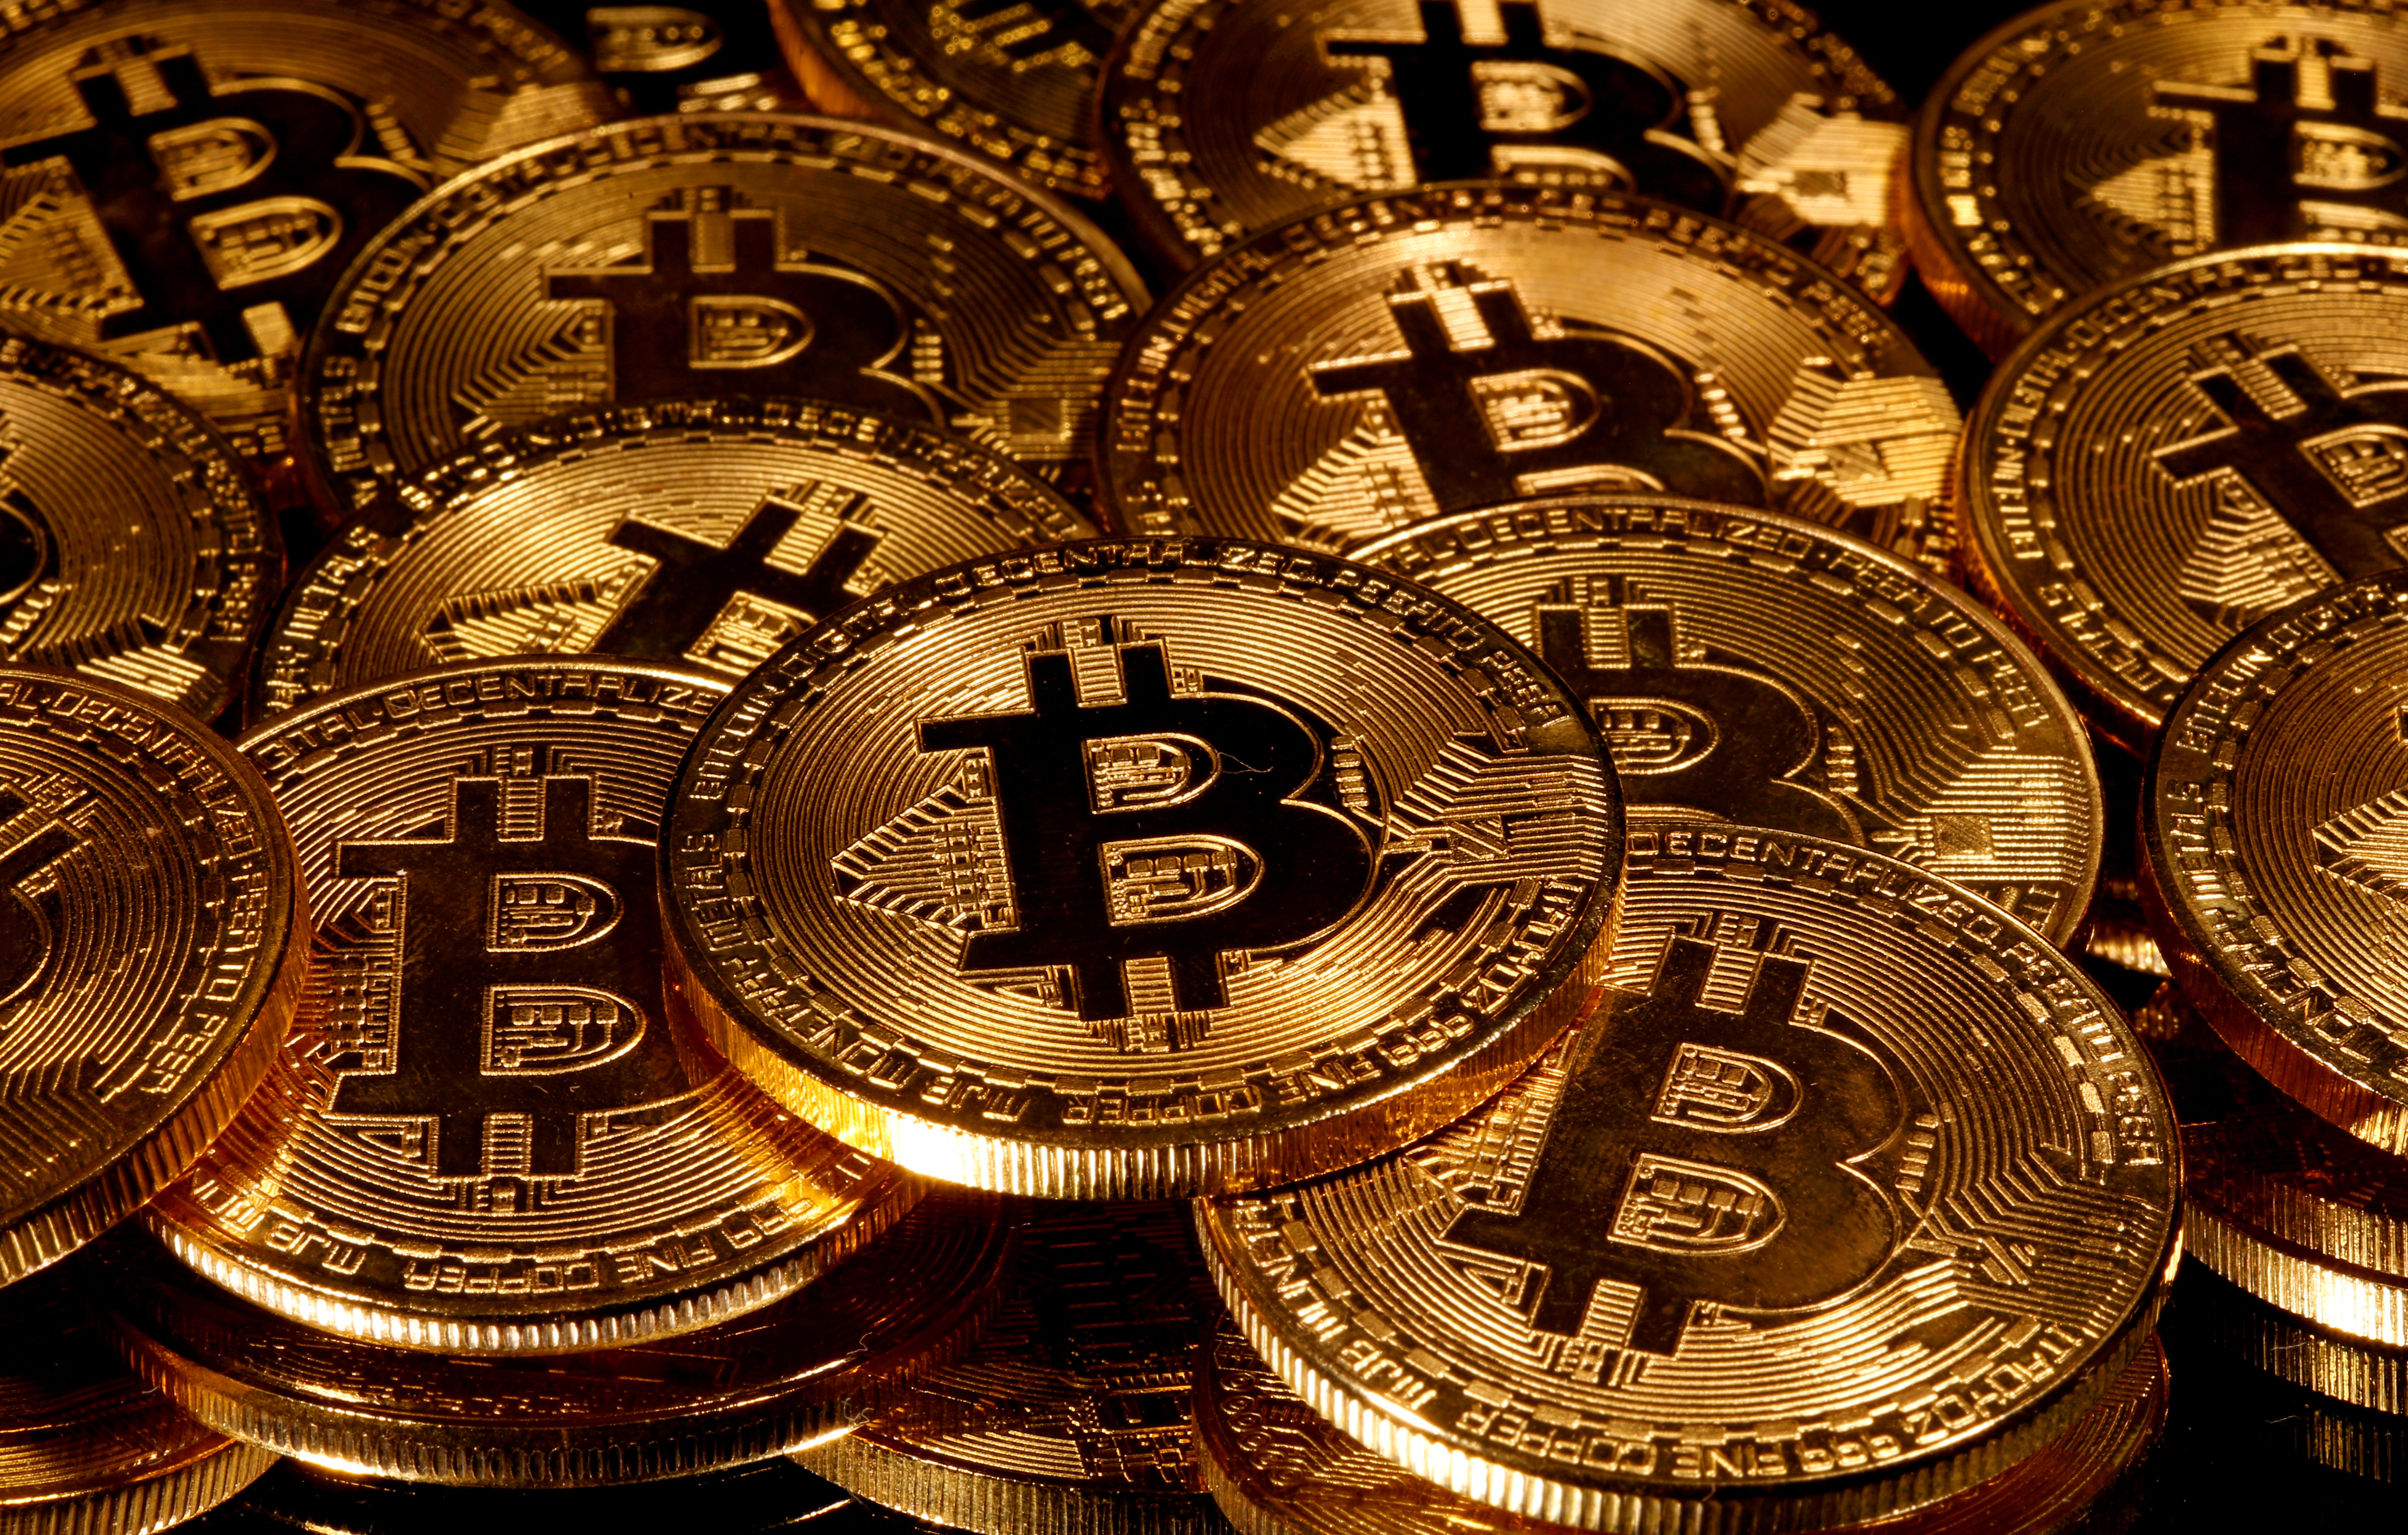 reich geworden mit bitcoins for sale